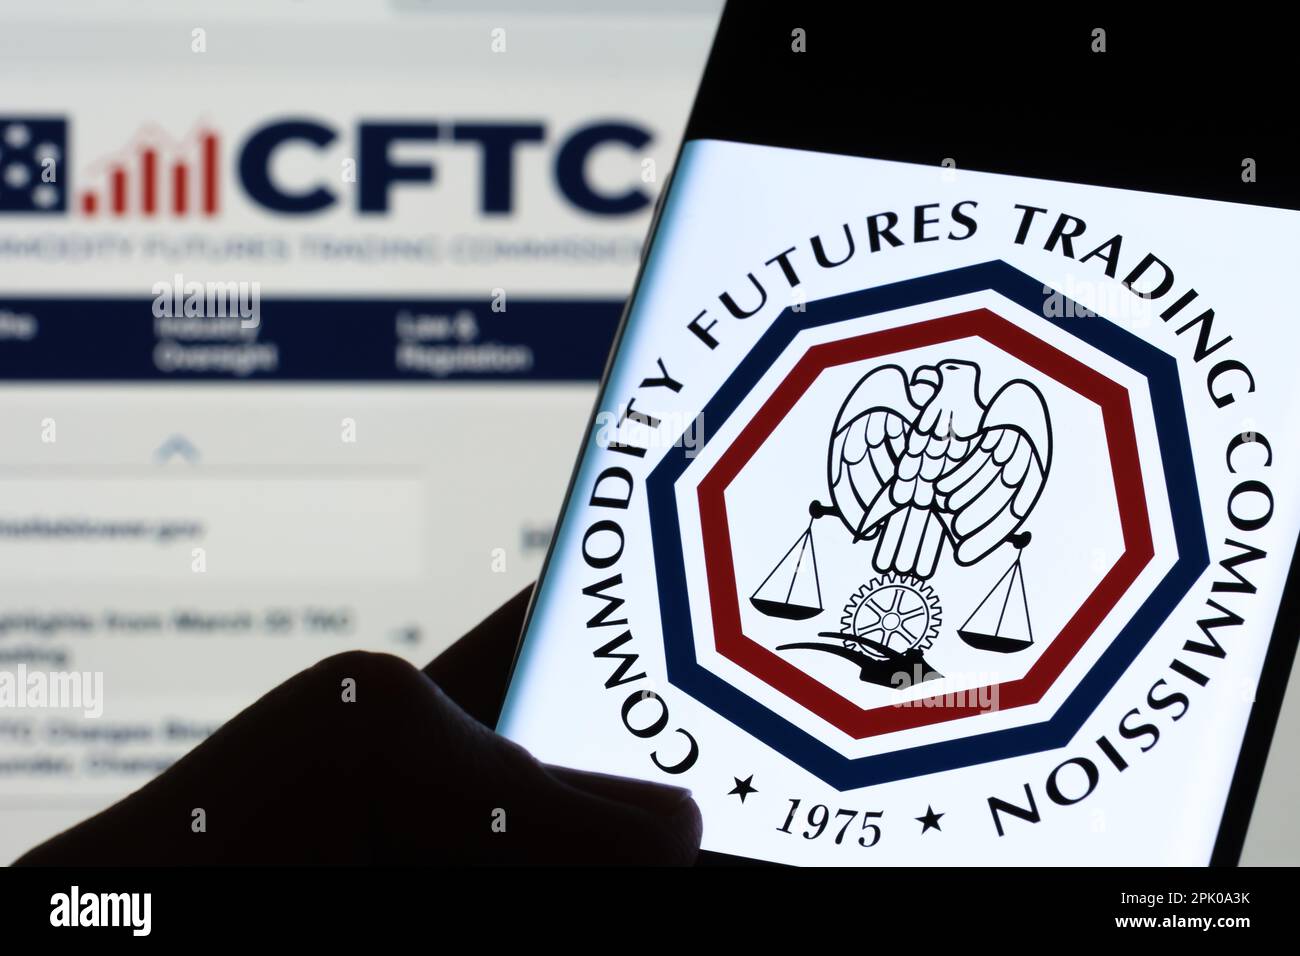 CFTC-Logo der Commodity Futures Trading Commission auf dem Bildschirm des Smartphones, das im Dunkeln in den Händen gehalten wird. Stafford, Großbritannien, 3. April 2023. Stockfoto